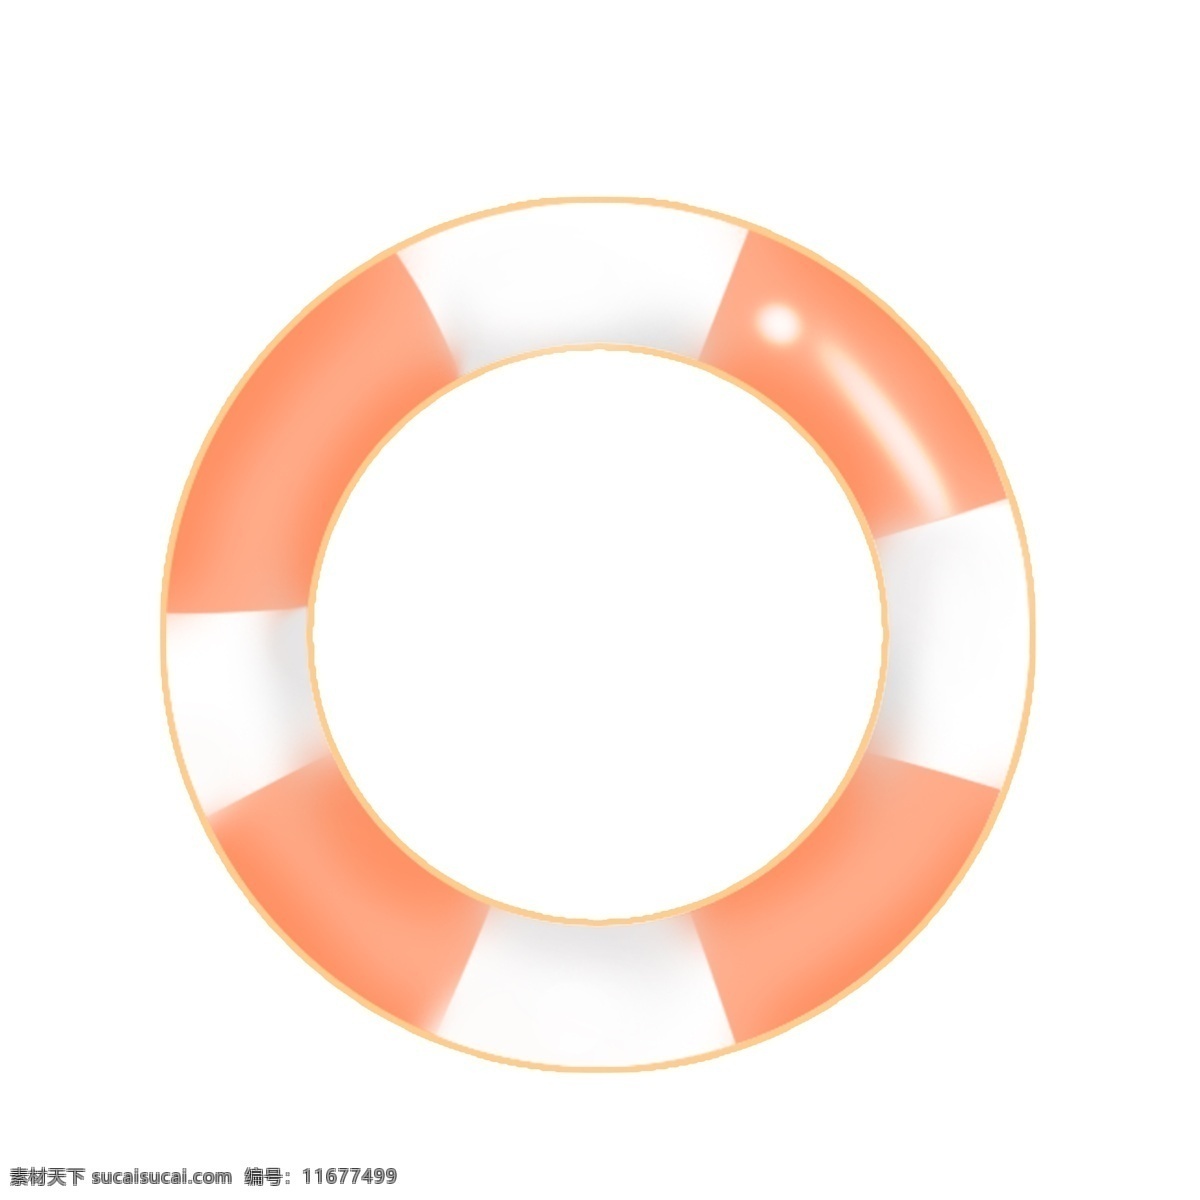 橘 色 简单 游泳 圈 橘色 游泳圈 白色 夏日